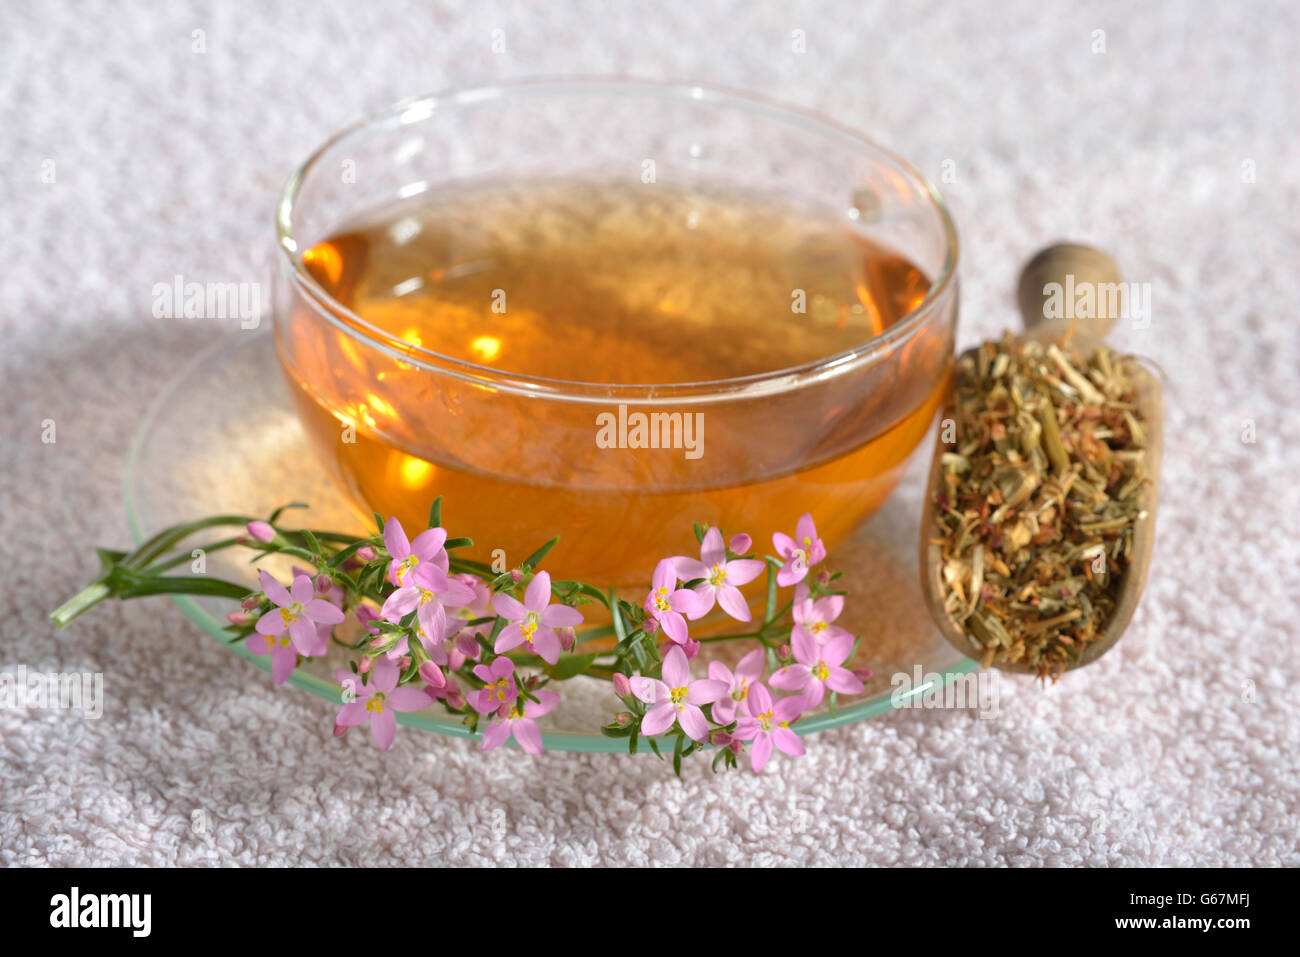 A cup of centaury tea / (Centaurium erythraea) Stock Photo